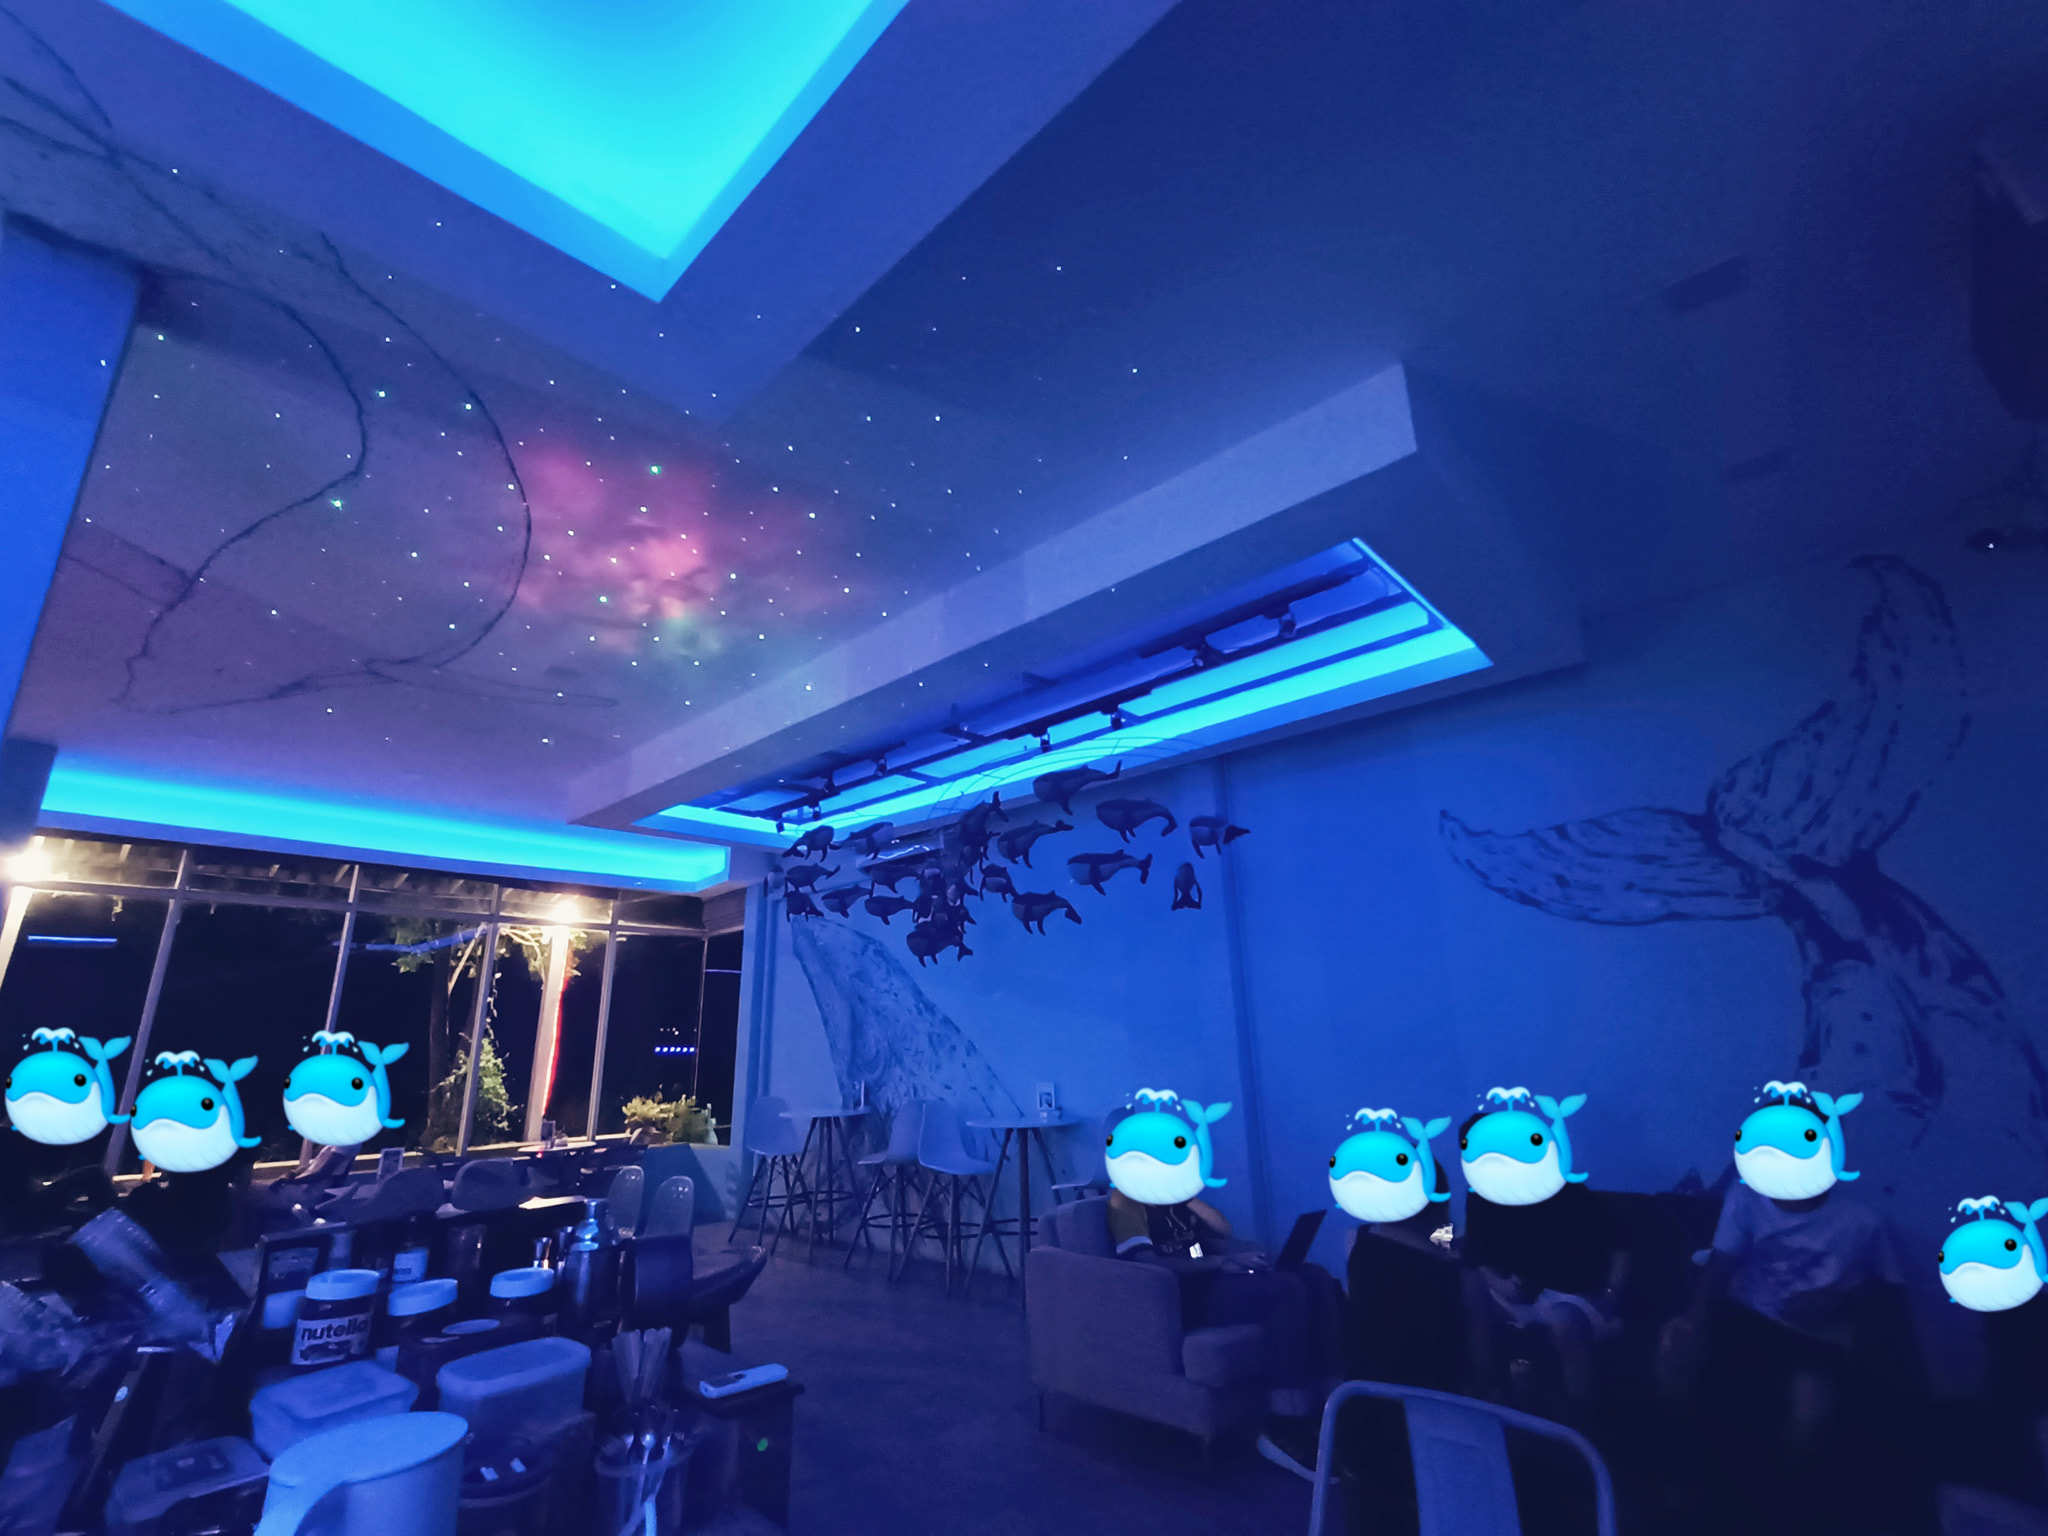 Whale space cafe (สวนอาหาร ชีวาฬคาเฟ่ มหาสารคาม) : Maha Sarakham (มหาสารคาม)